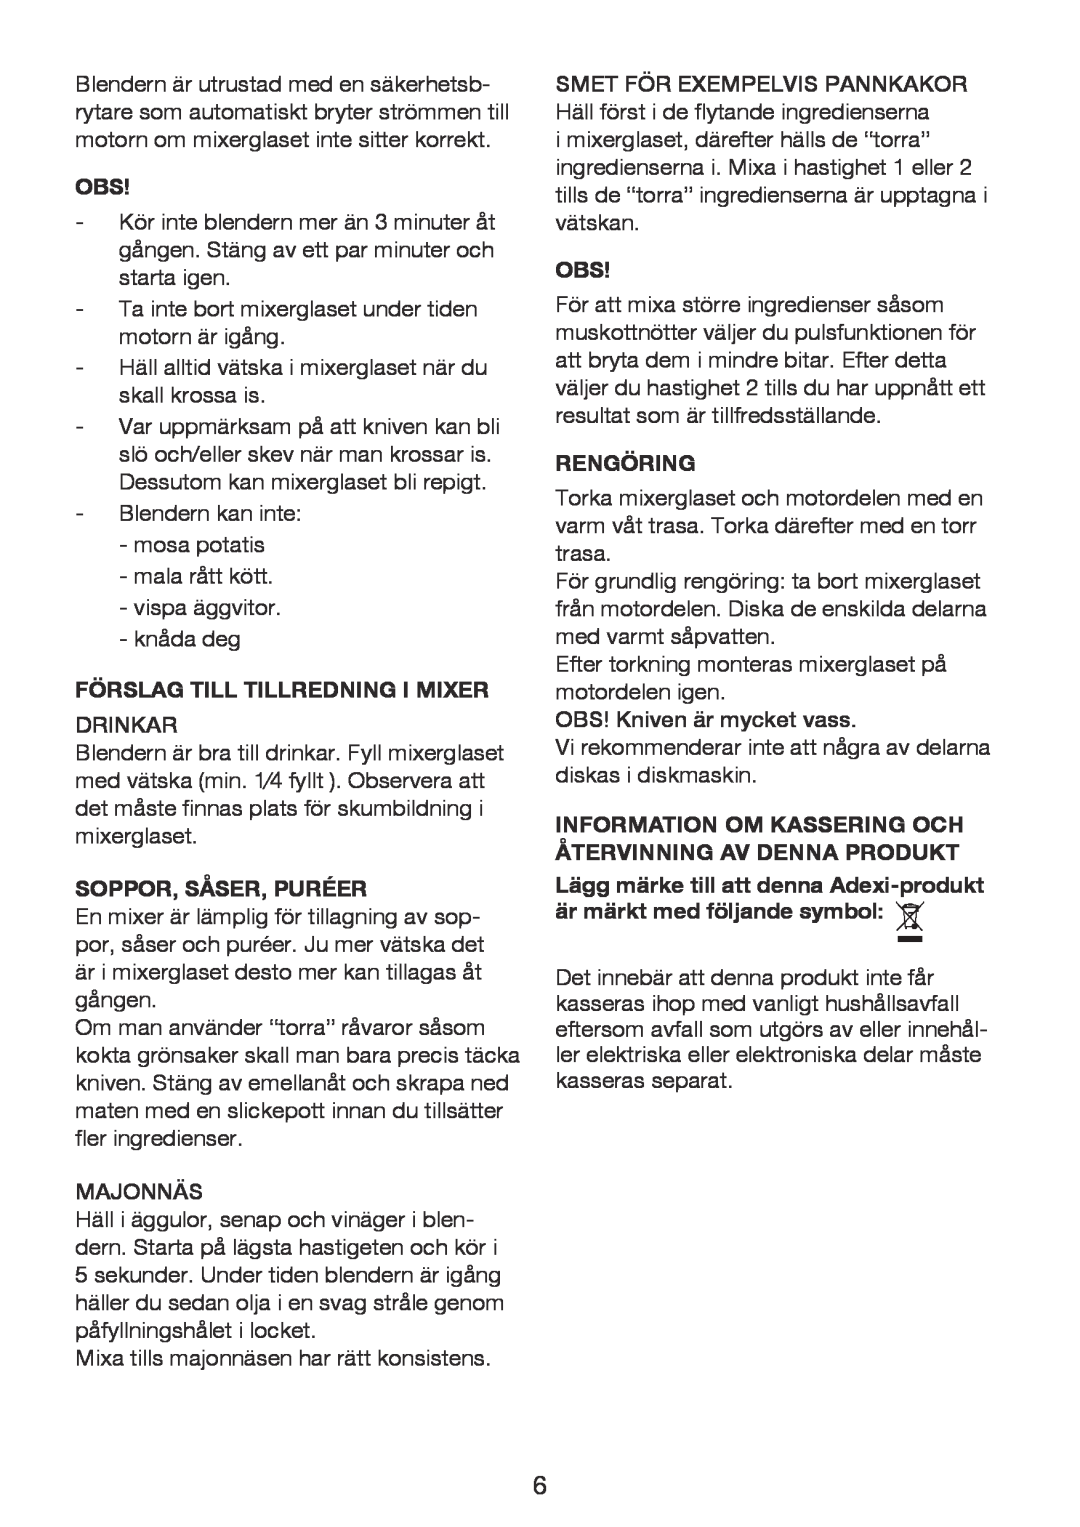 Exido 246-017 manual Förslag Till Tillredning I Mixer, Soppor, Såser, Puréer, Rengöring 